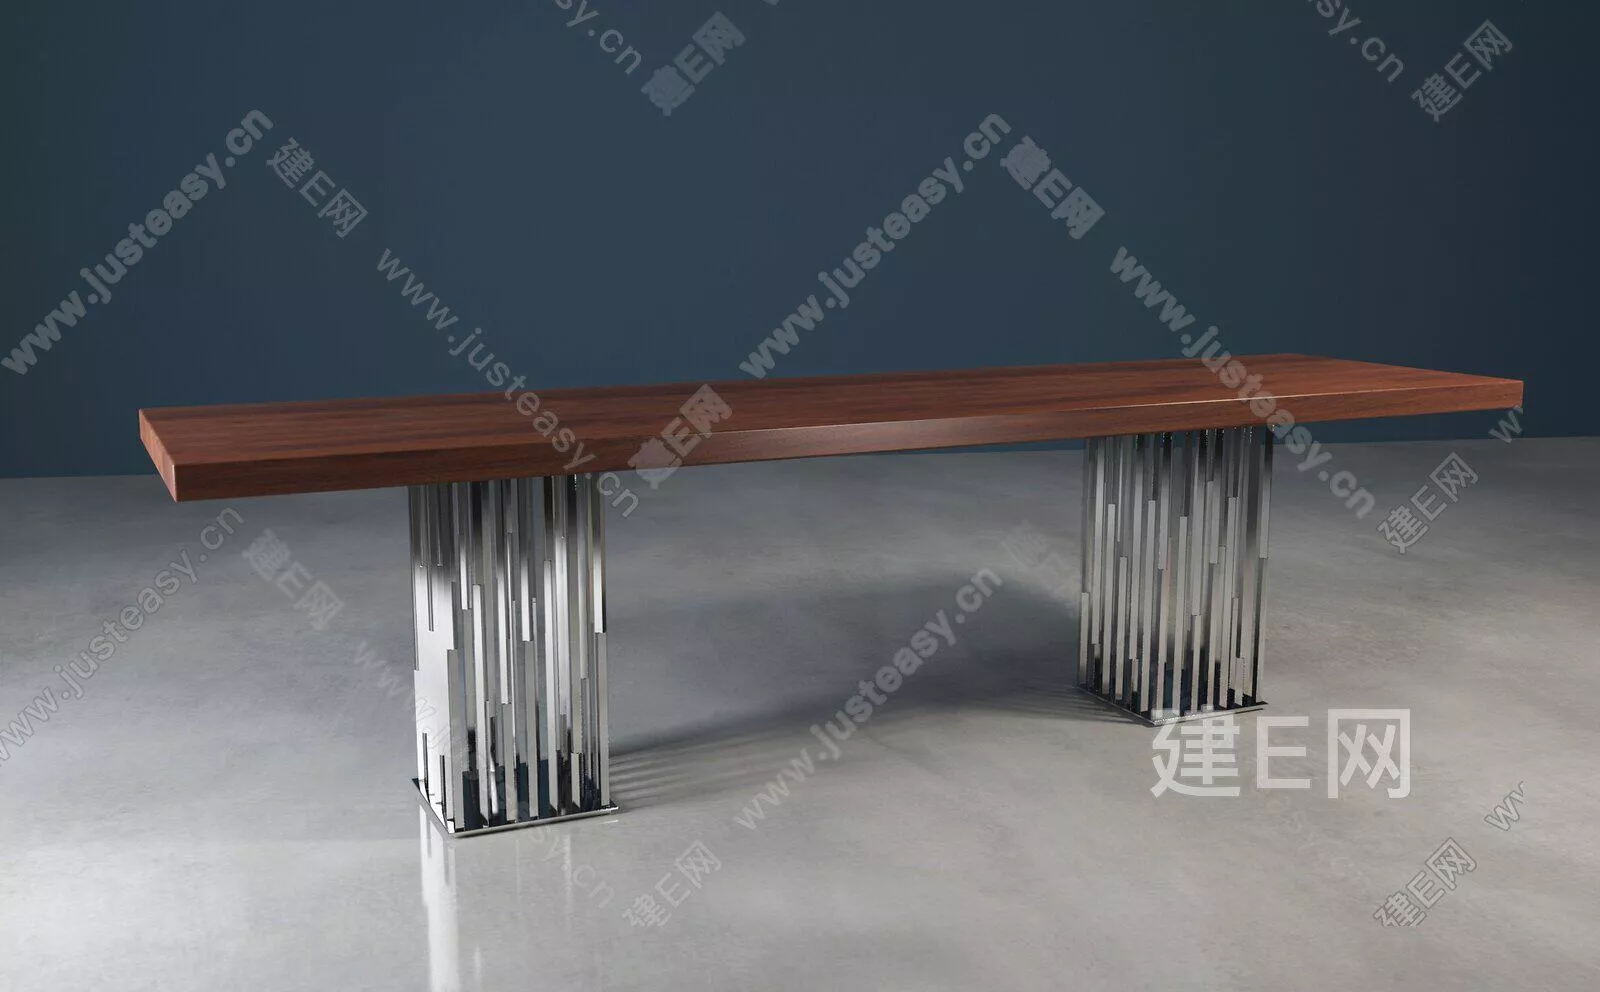 MODERN DINING TABLE SET - SKETCHUP 3D MODEL - ENSCAPE - 111037859